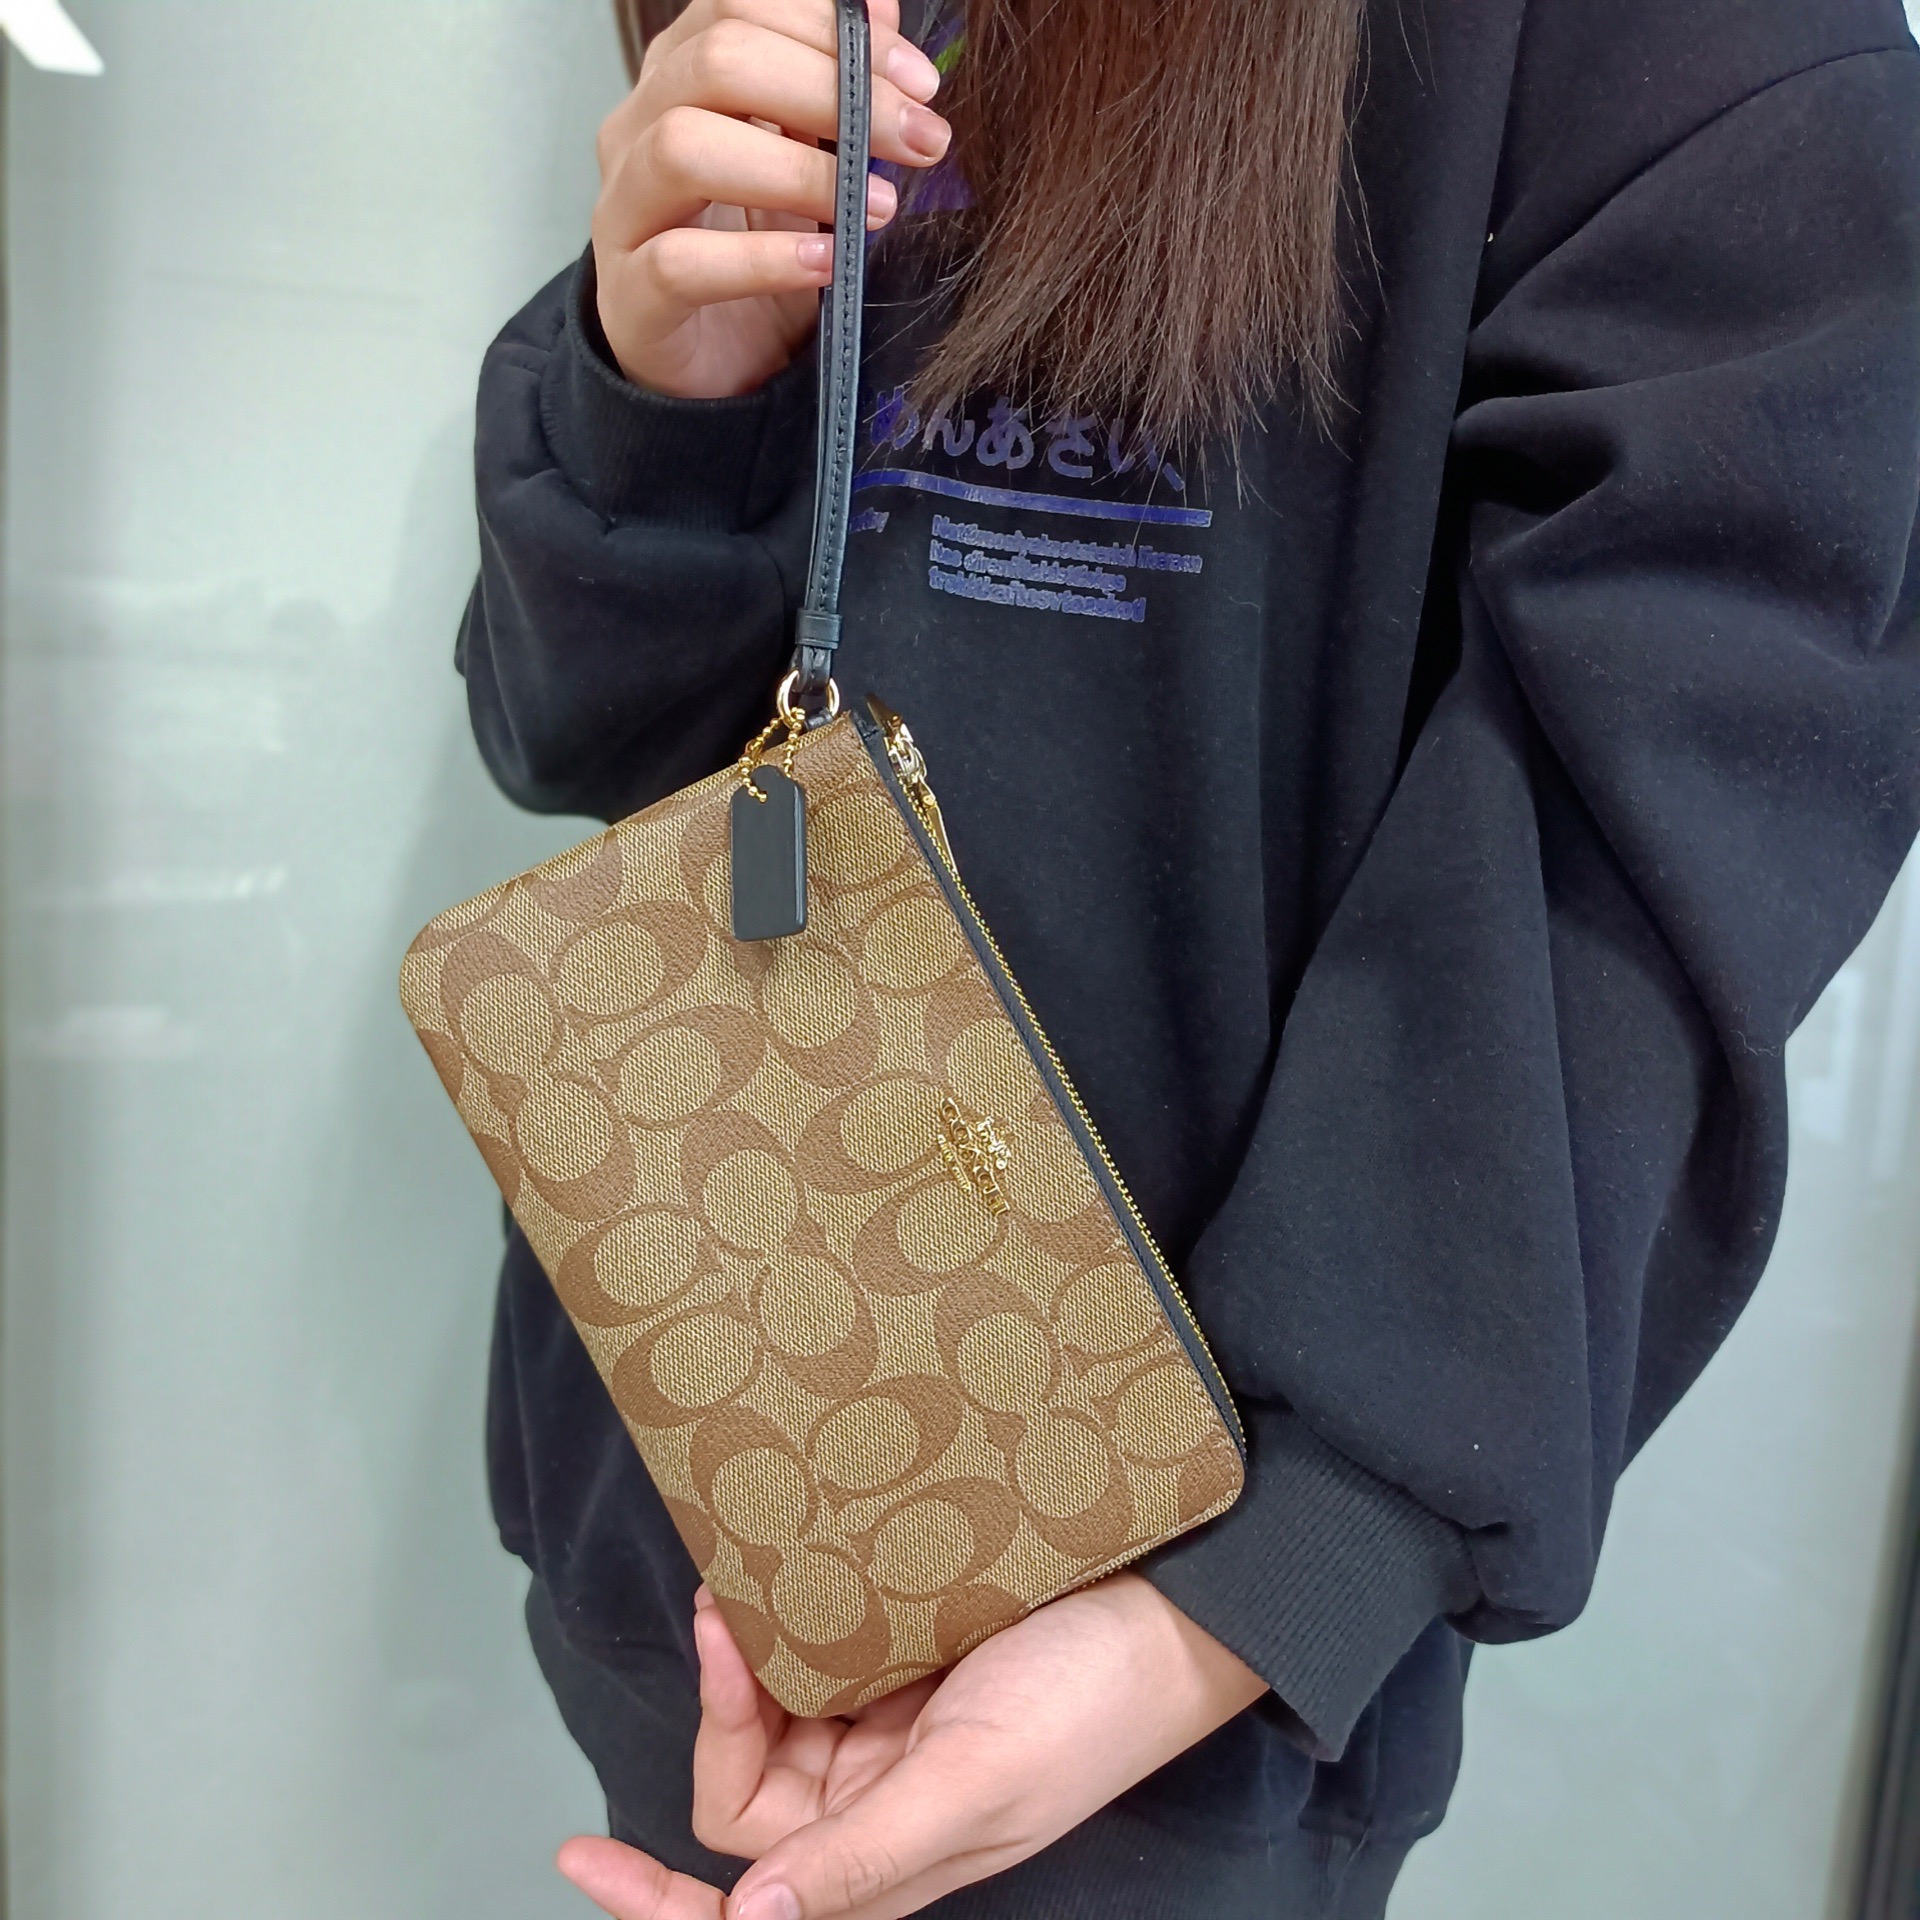 Xiaoling Tsai Meidai COACH COACH New Hand Grab Bag Wrist Bag Zero Money Bag Multiple Screens Zero Wallet